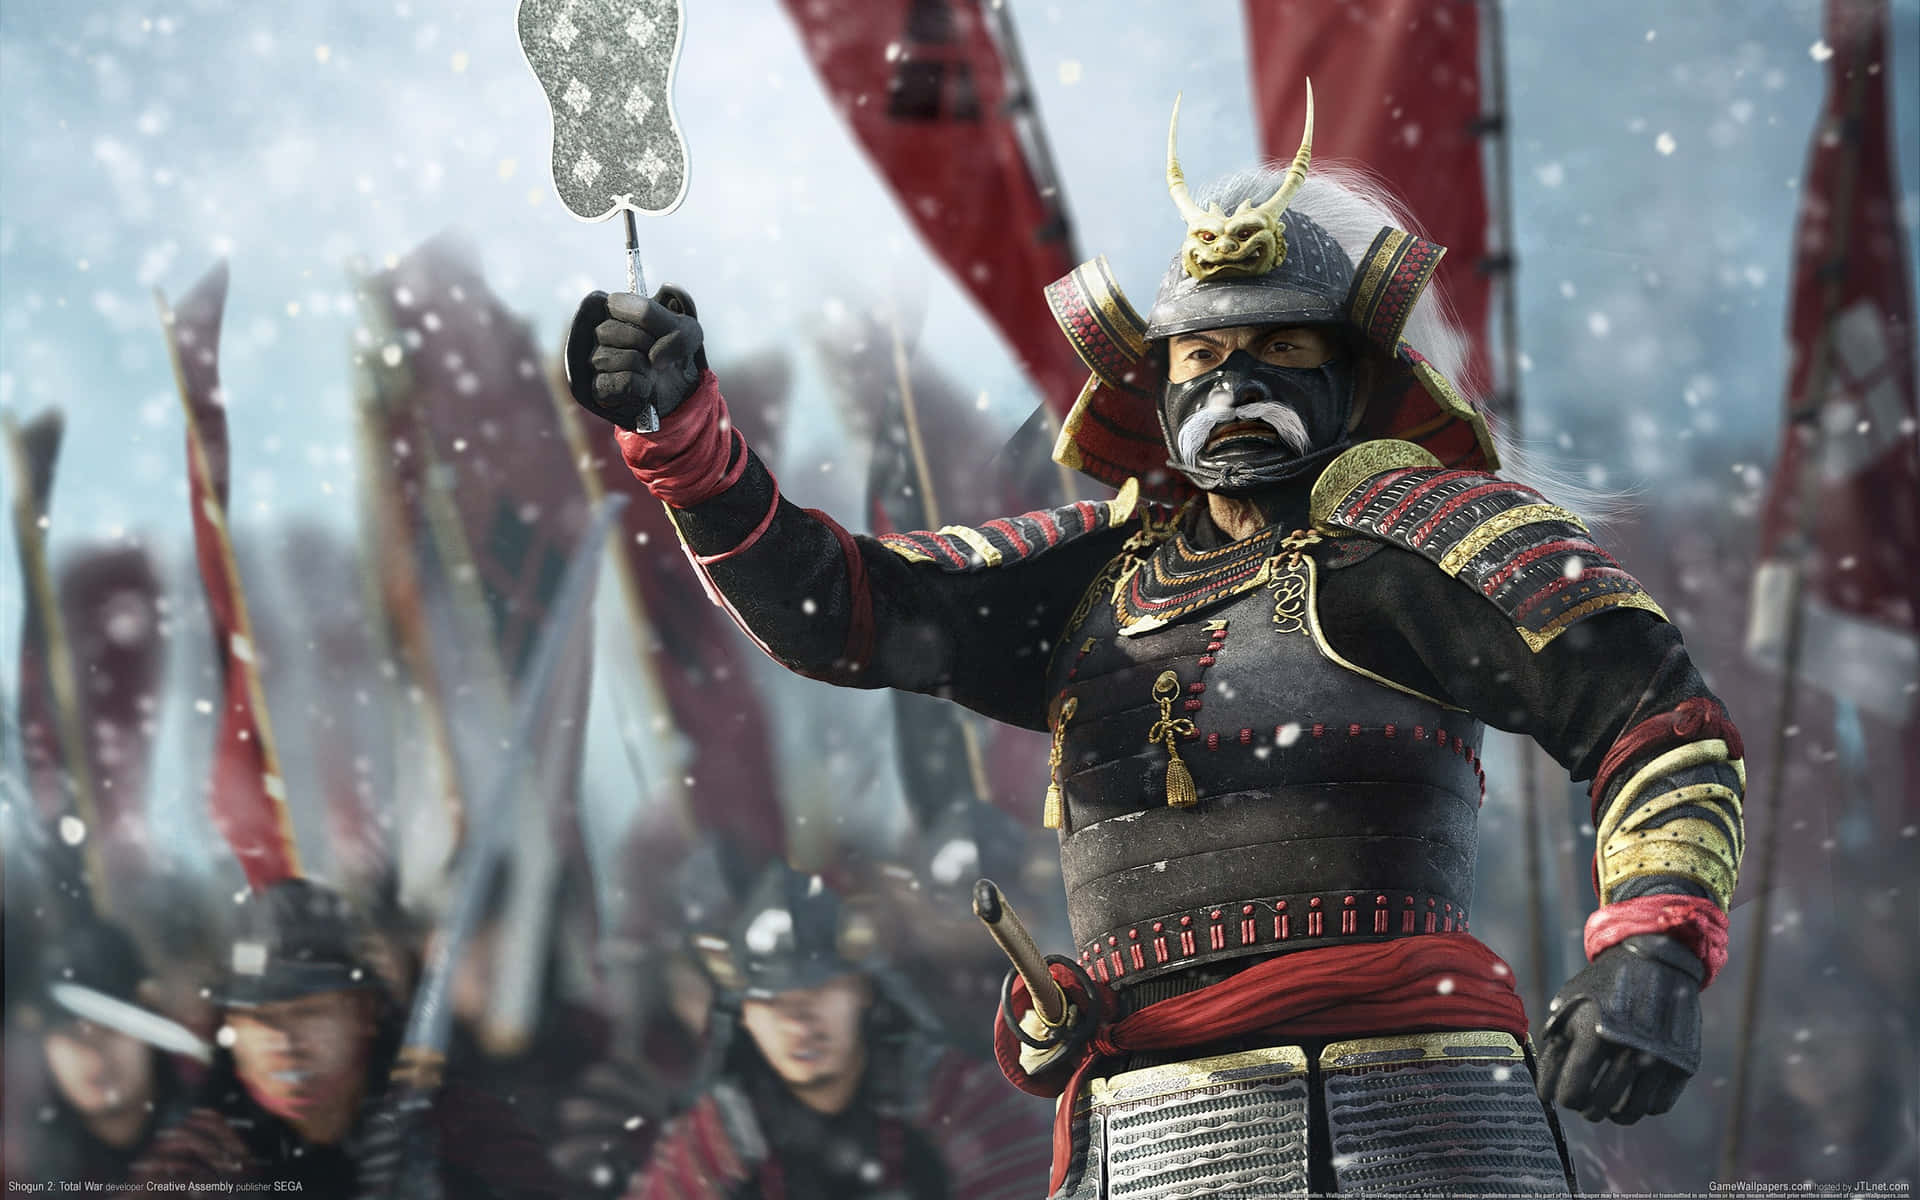 En samuraikriger holder et flag i sneen. Wallpaper